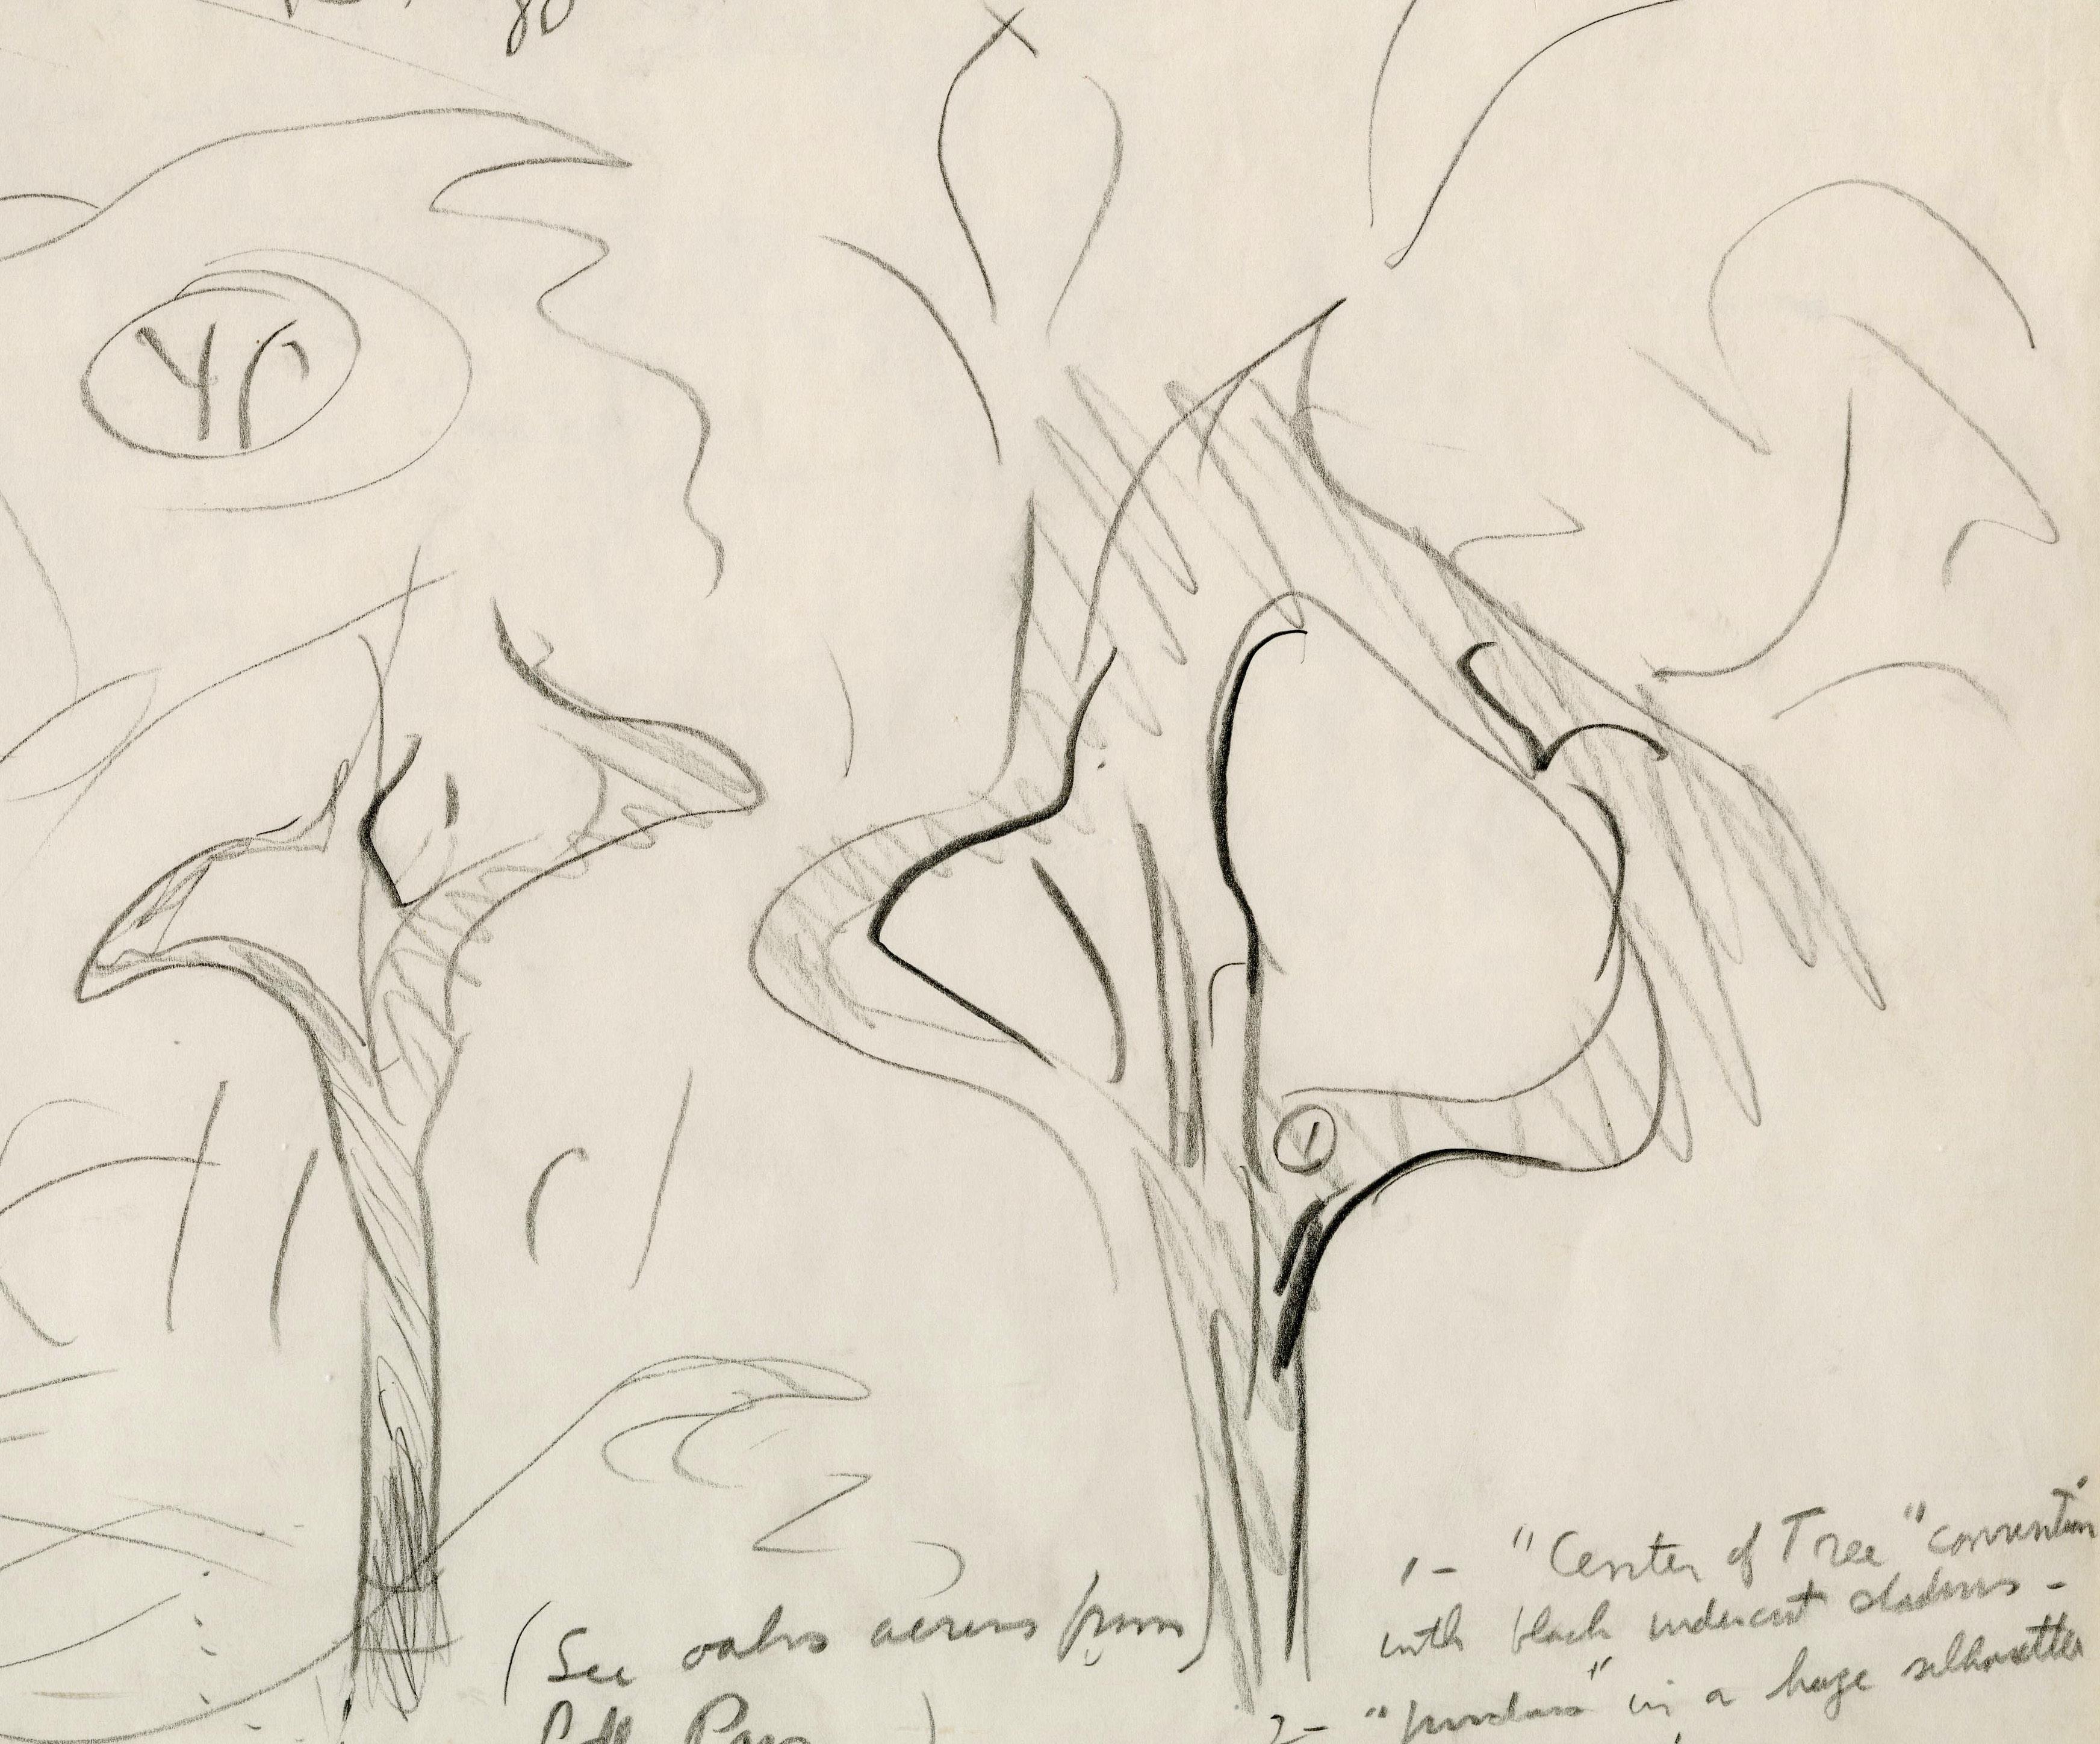 Blizzard à Wood Wood
Graphite sur papier, c. 1945-1963
Non signé
Provenance : Sid Deutsch Gallery (a) Gallery, New York
Annoté de notes pour compléter le dessin.  La Deutsch Gallery s'occupe des œuvres de Burchfield depuis le début des années 1960. 